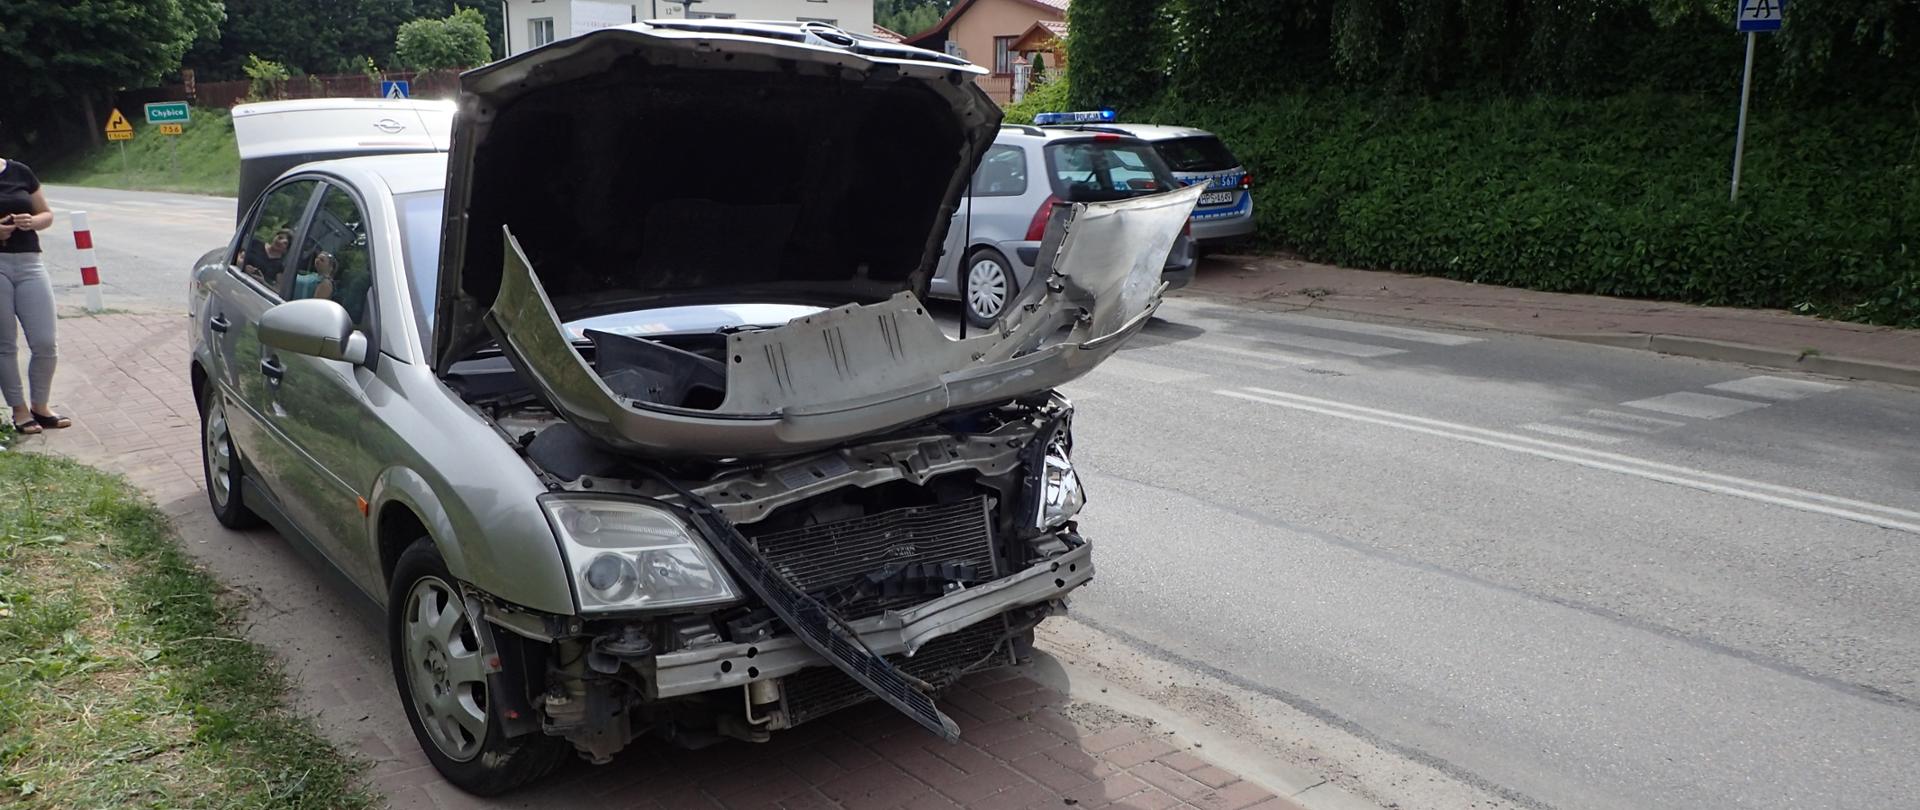 Samochód osobowy Opel po kolizji w miejscowości Ambrożów